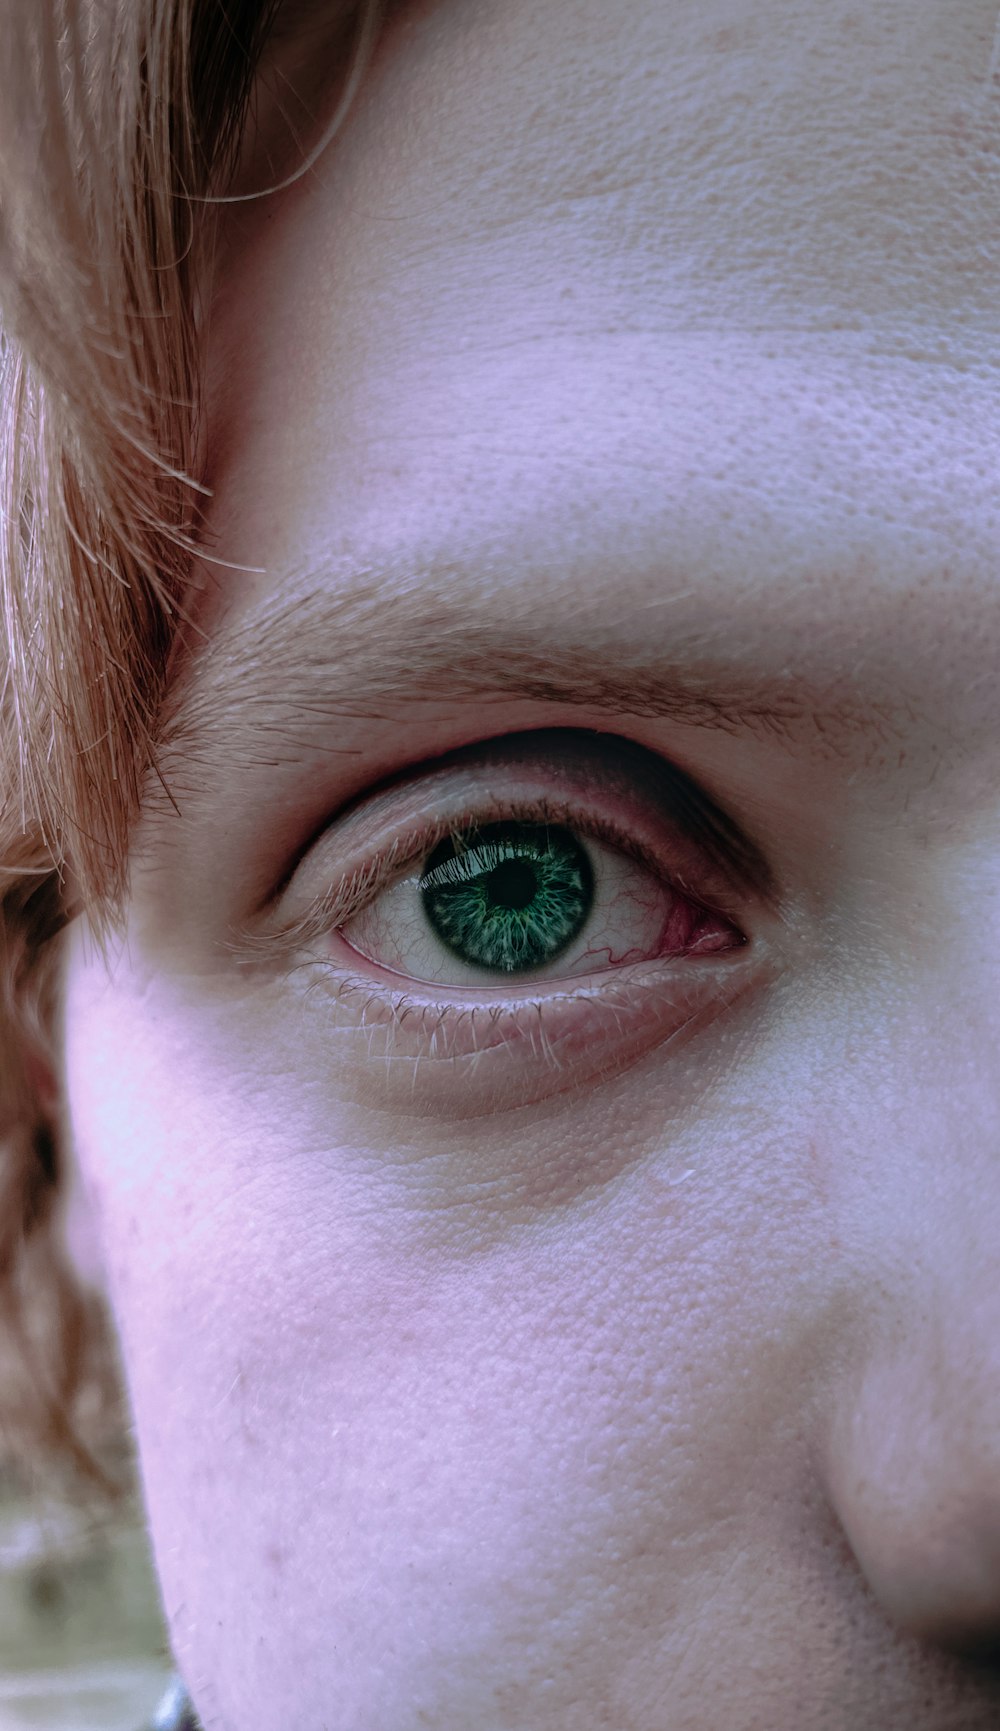 um close up de uma pessoa com olhos verdes